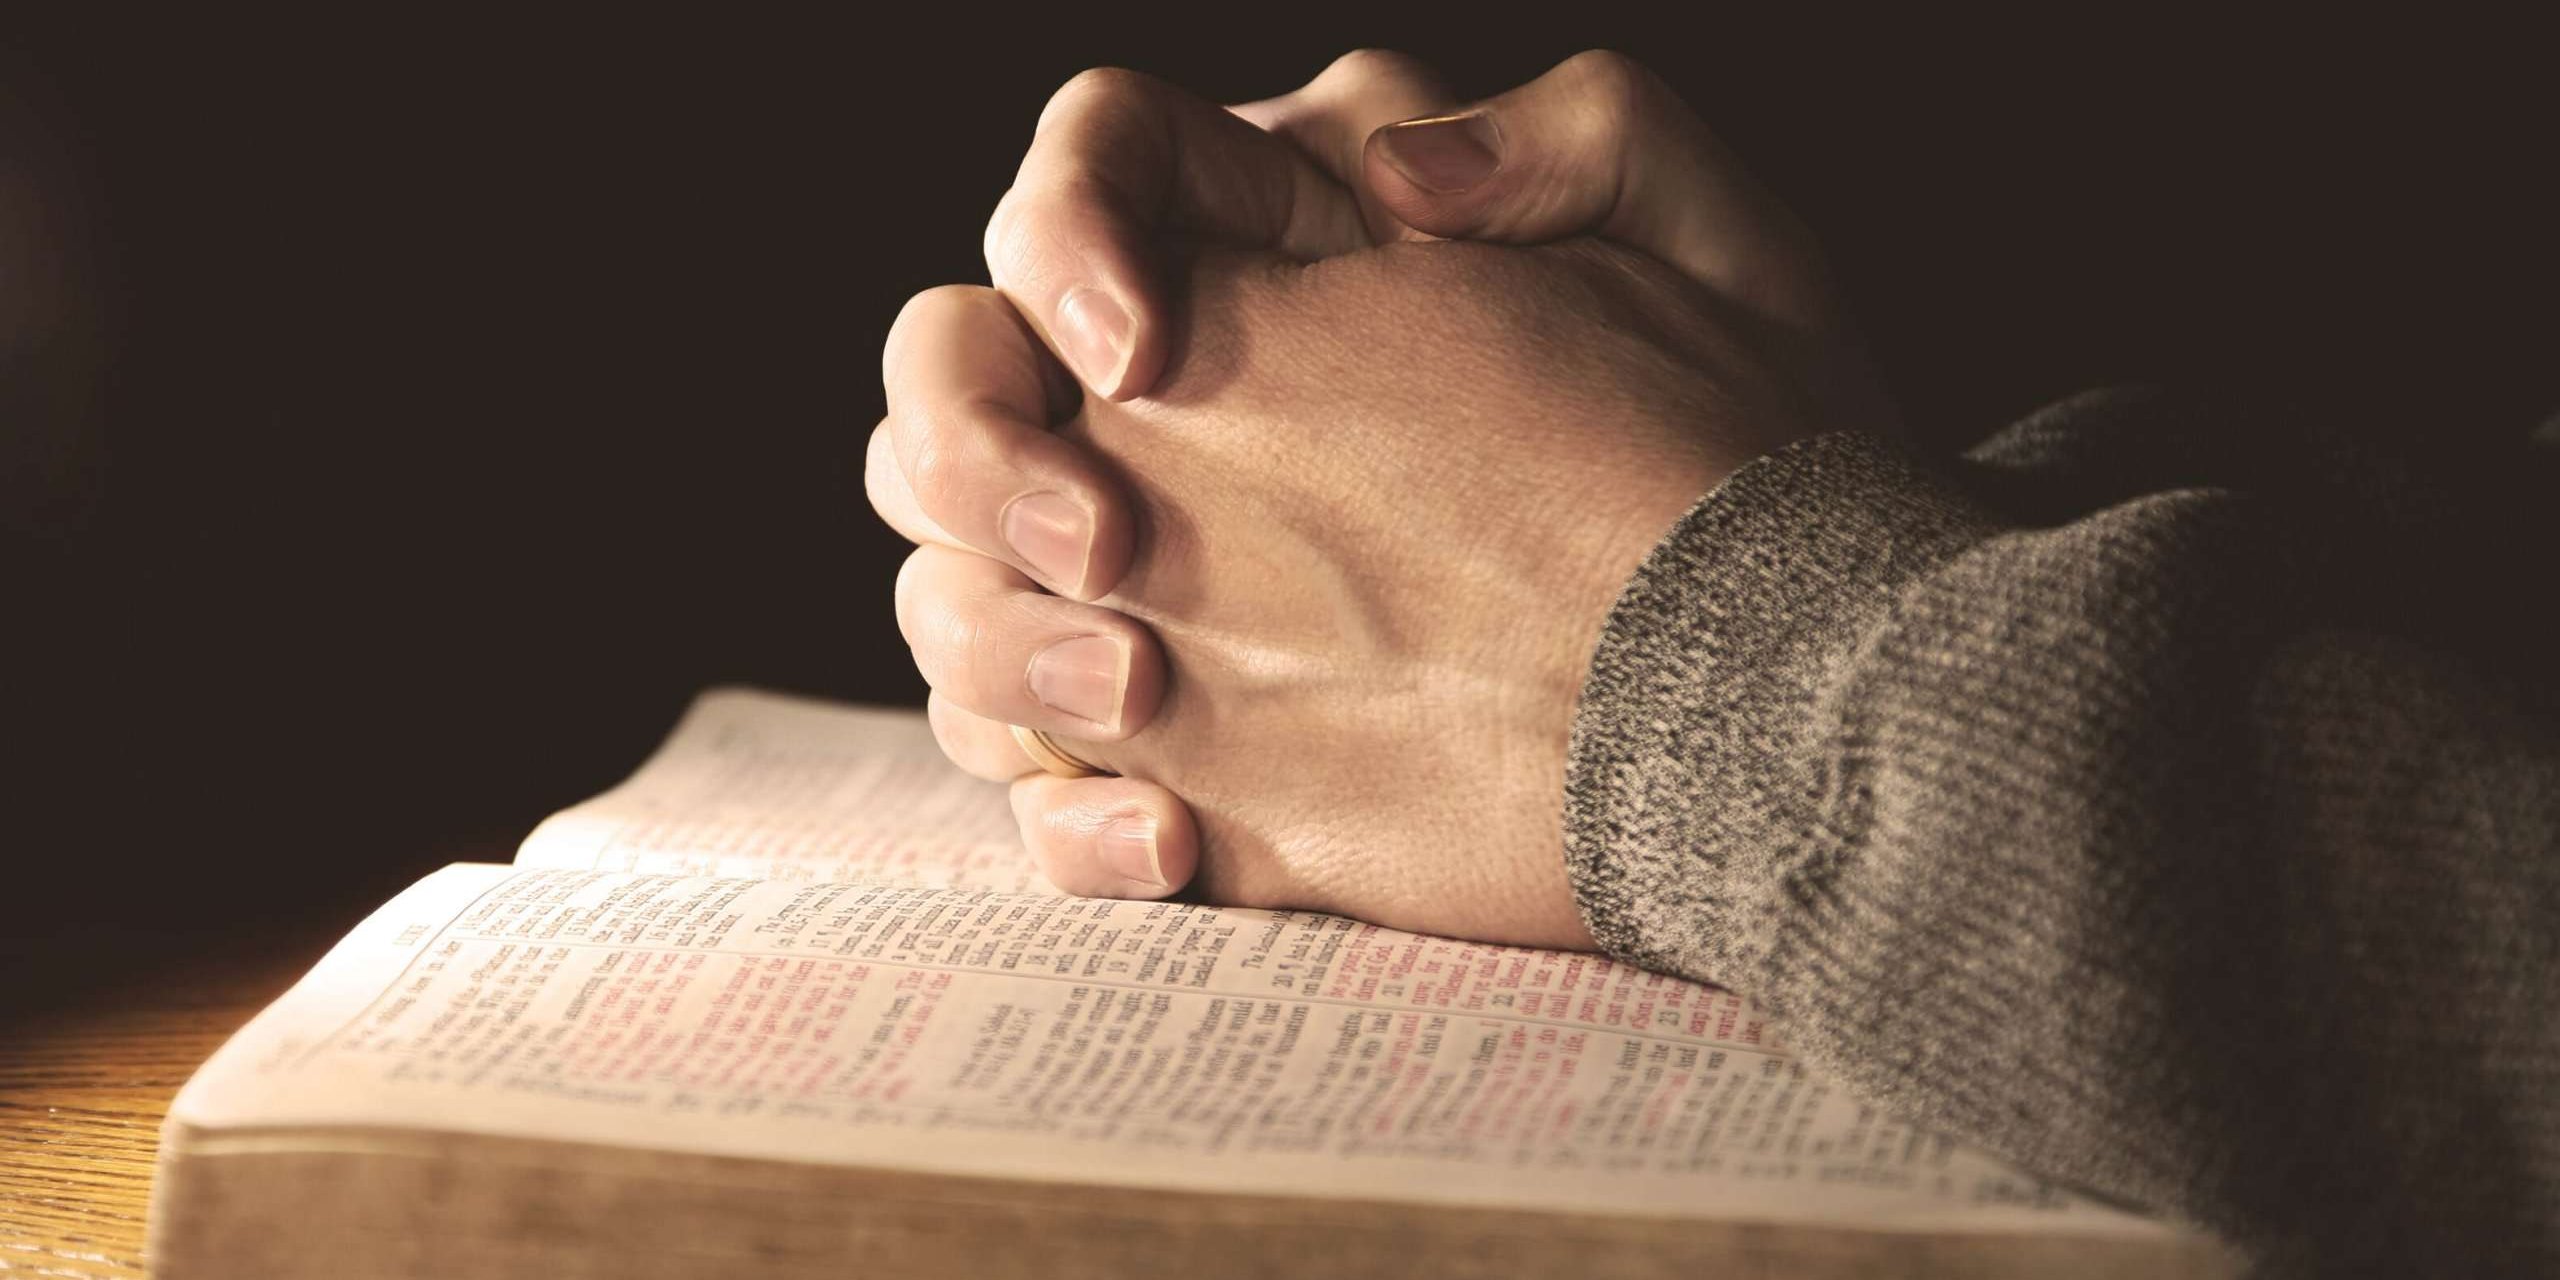 Читать для успокоения души. Молитва Библия. Человек молится. Человек молится с Библией. Евангелие в руке фото.